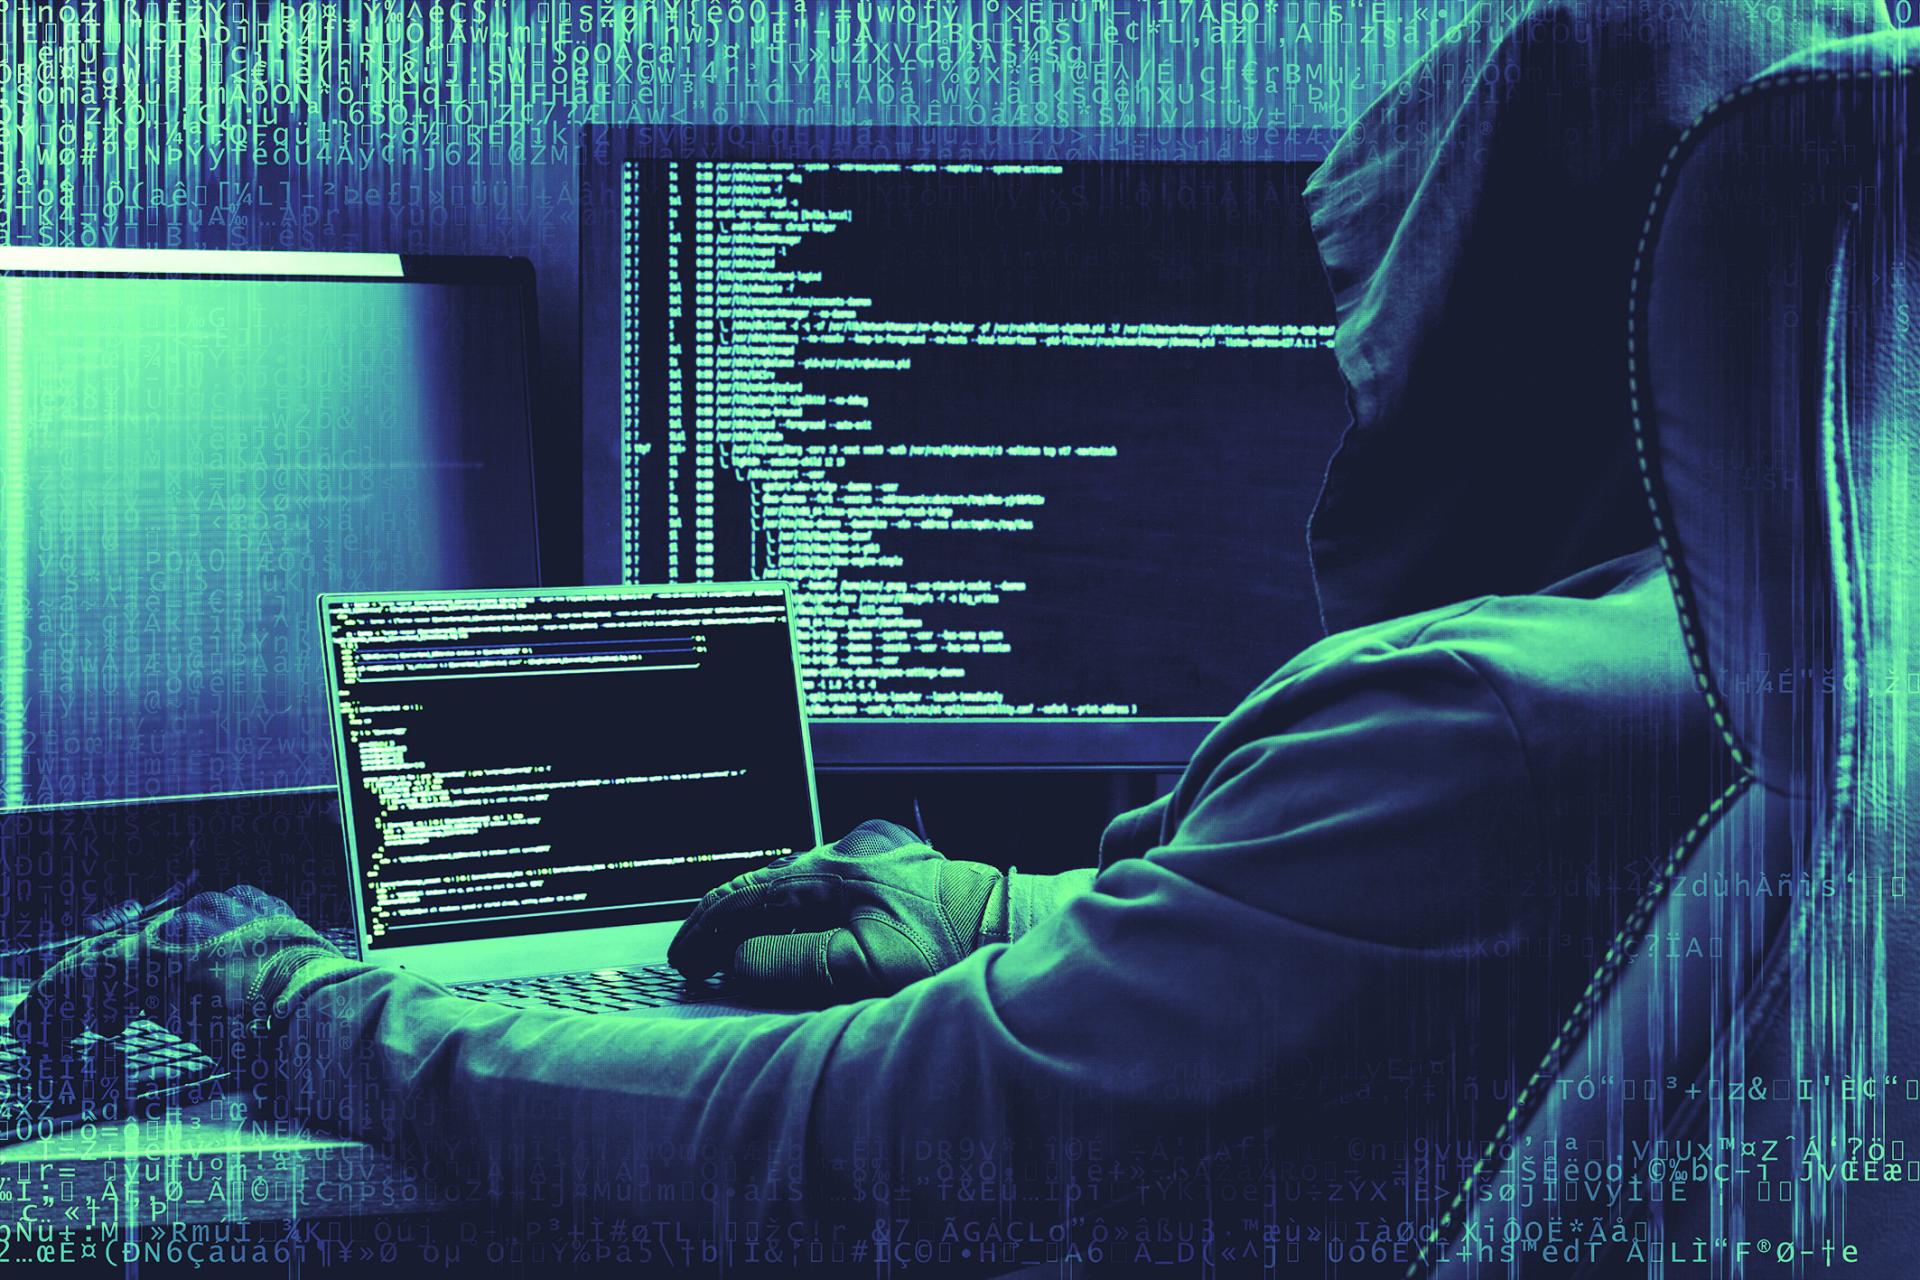 Ruskí hackeri sa nabúrali do ukrajinských kaviarní. Cez webkamery tajne získavajú informácie, znie z USA